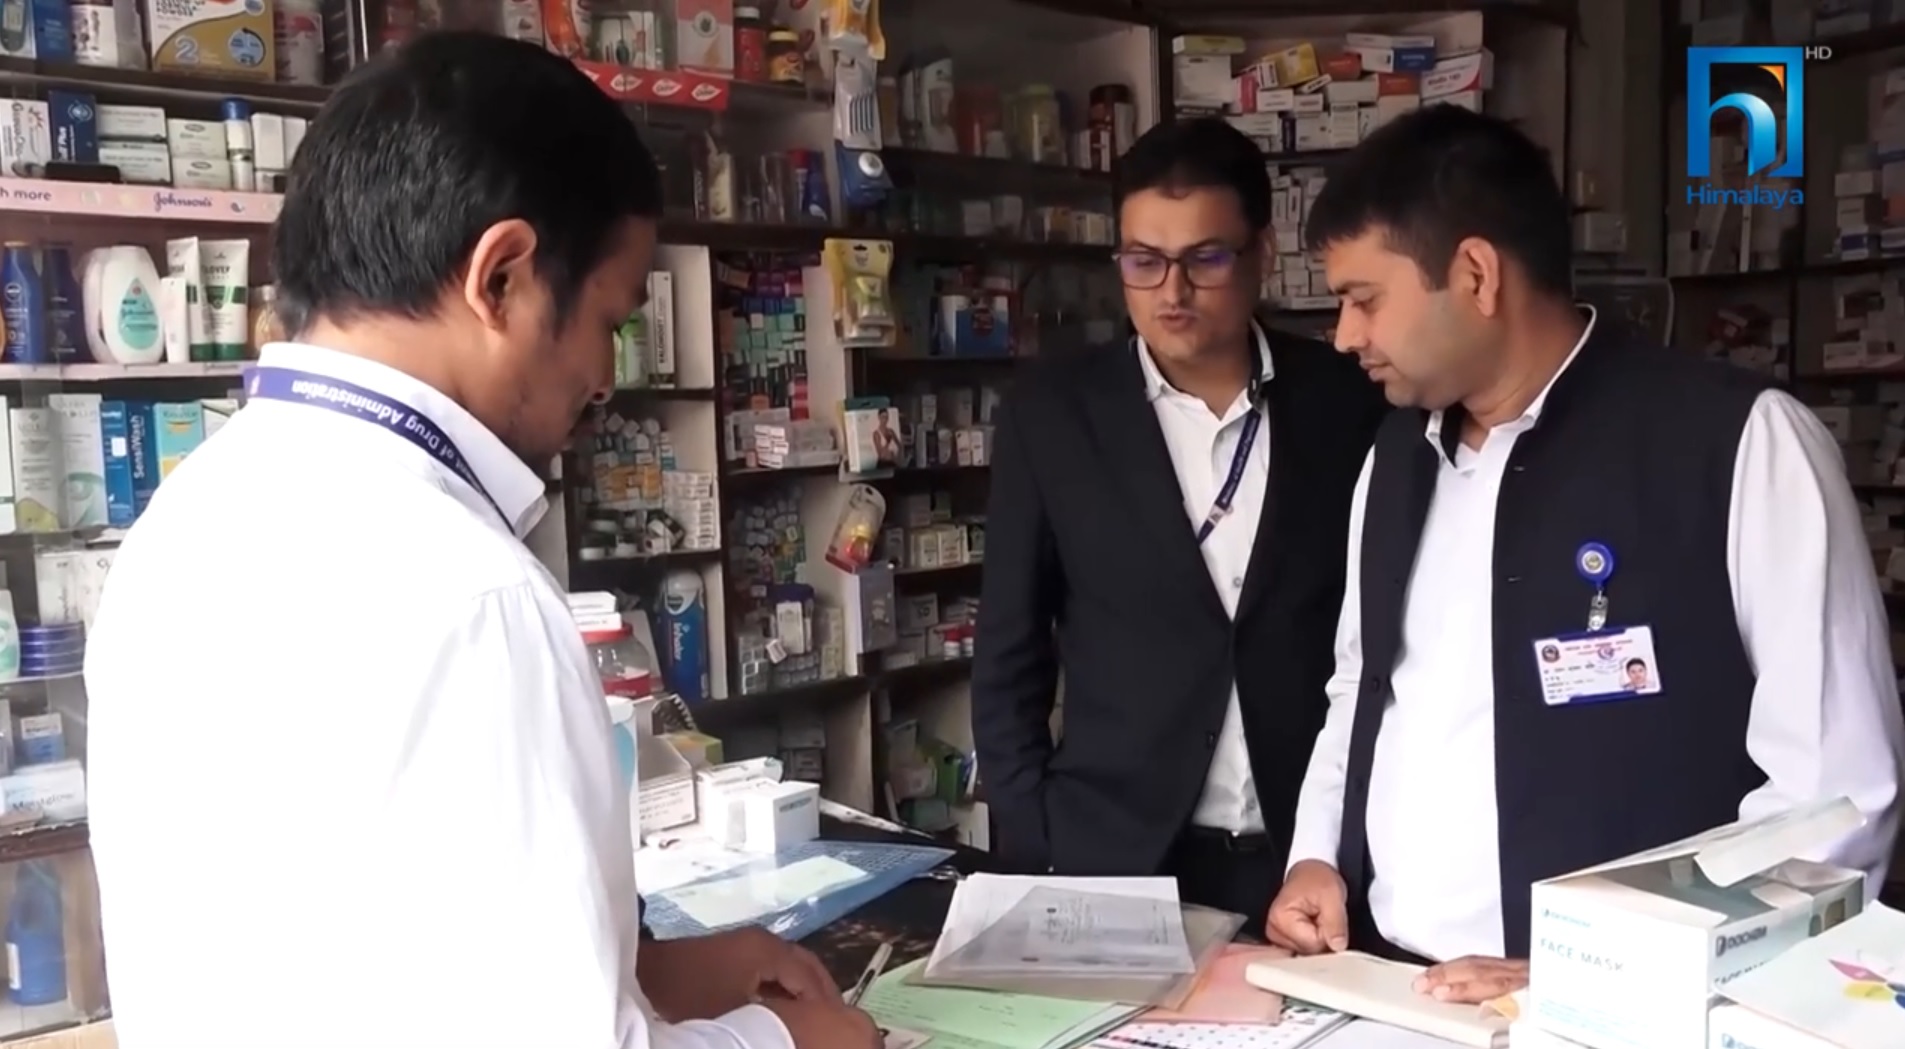 काठमाडौंका ठूला अस्पतालका औषधि पसलमा म्याद सकिएका औषधि (भिडियो रिपोर्टसहित)